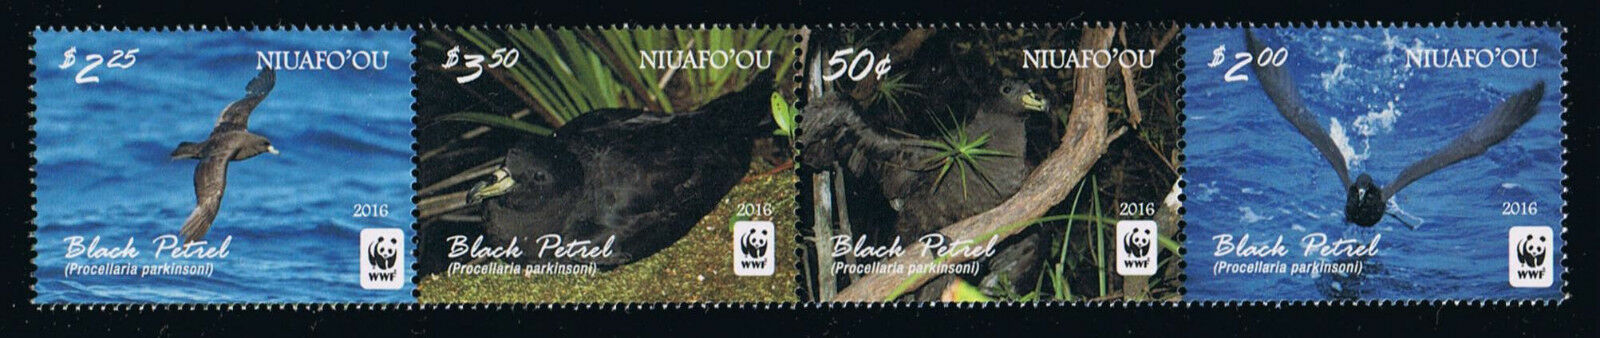 Niuafo'ou - 2016 Wwf Bird - Black Petrel Postage Stamp Strip